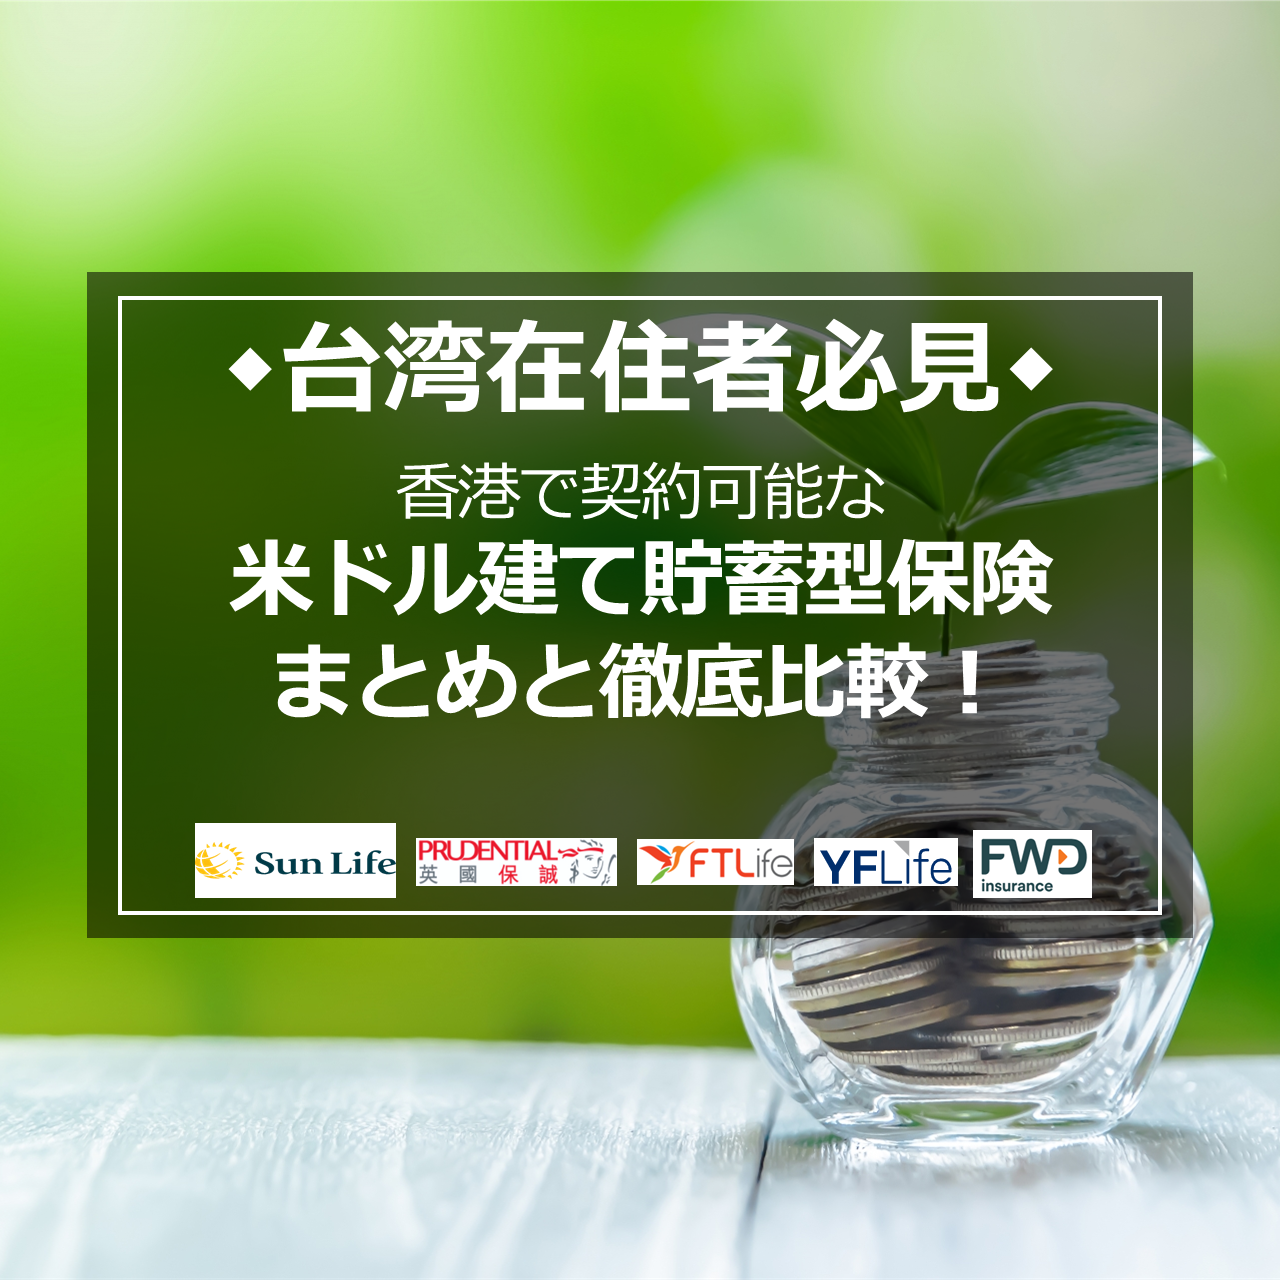 【動画付き】≈台湾在住者必見≈　台湾在住日本人が申込可能な資産運用ツール「貯蓄型保険」 商品別利回り徹底比較！